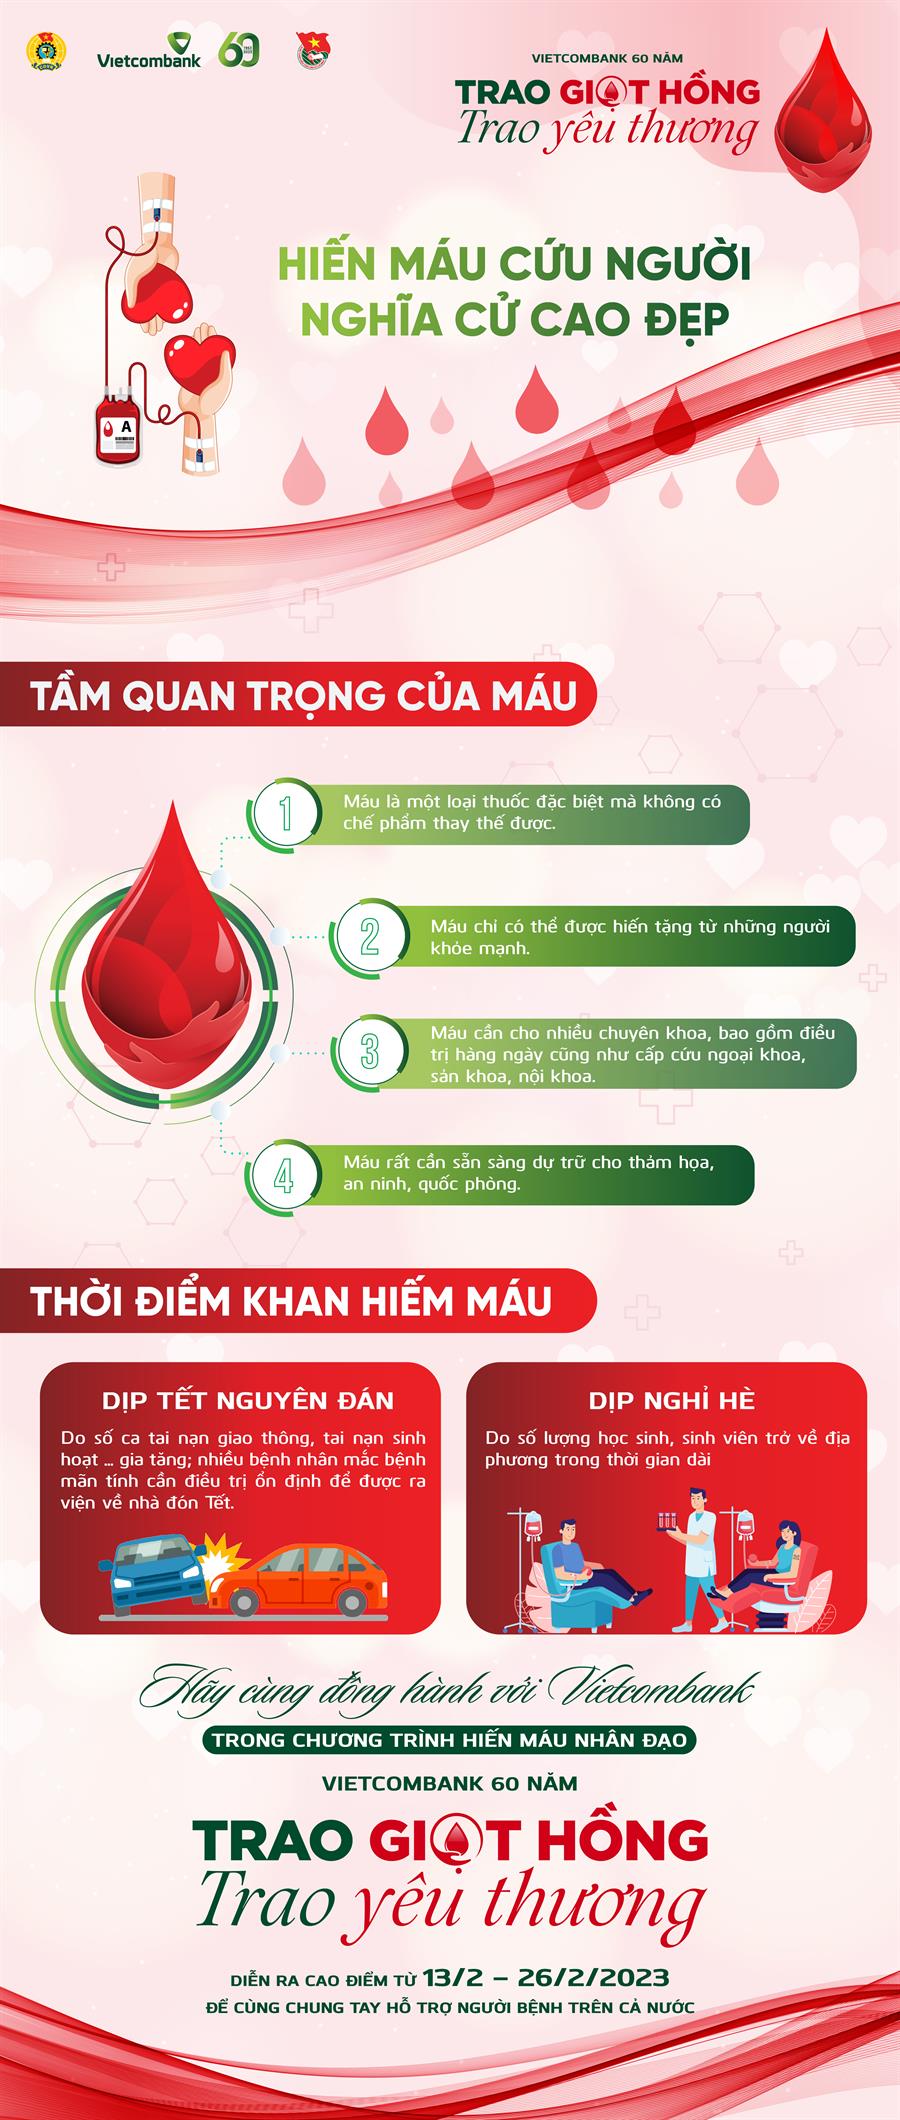 chương trình hiến máu nhân đạo “Vietcombank 60 năm: Trao giọt ...